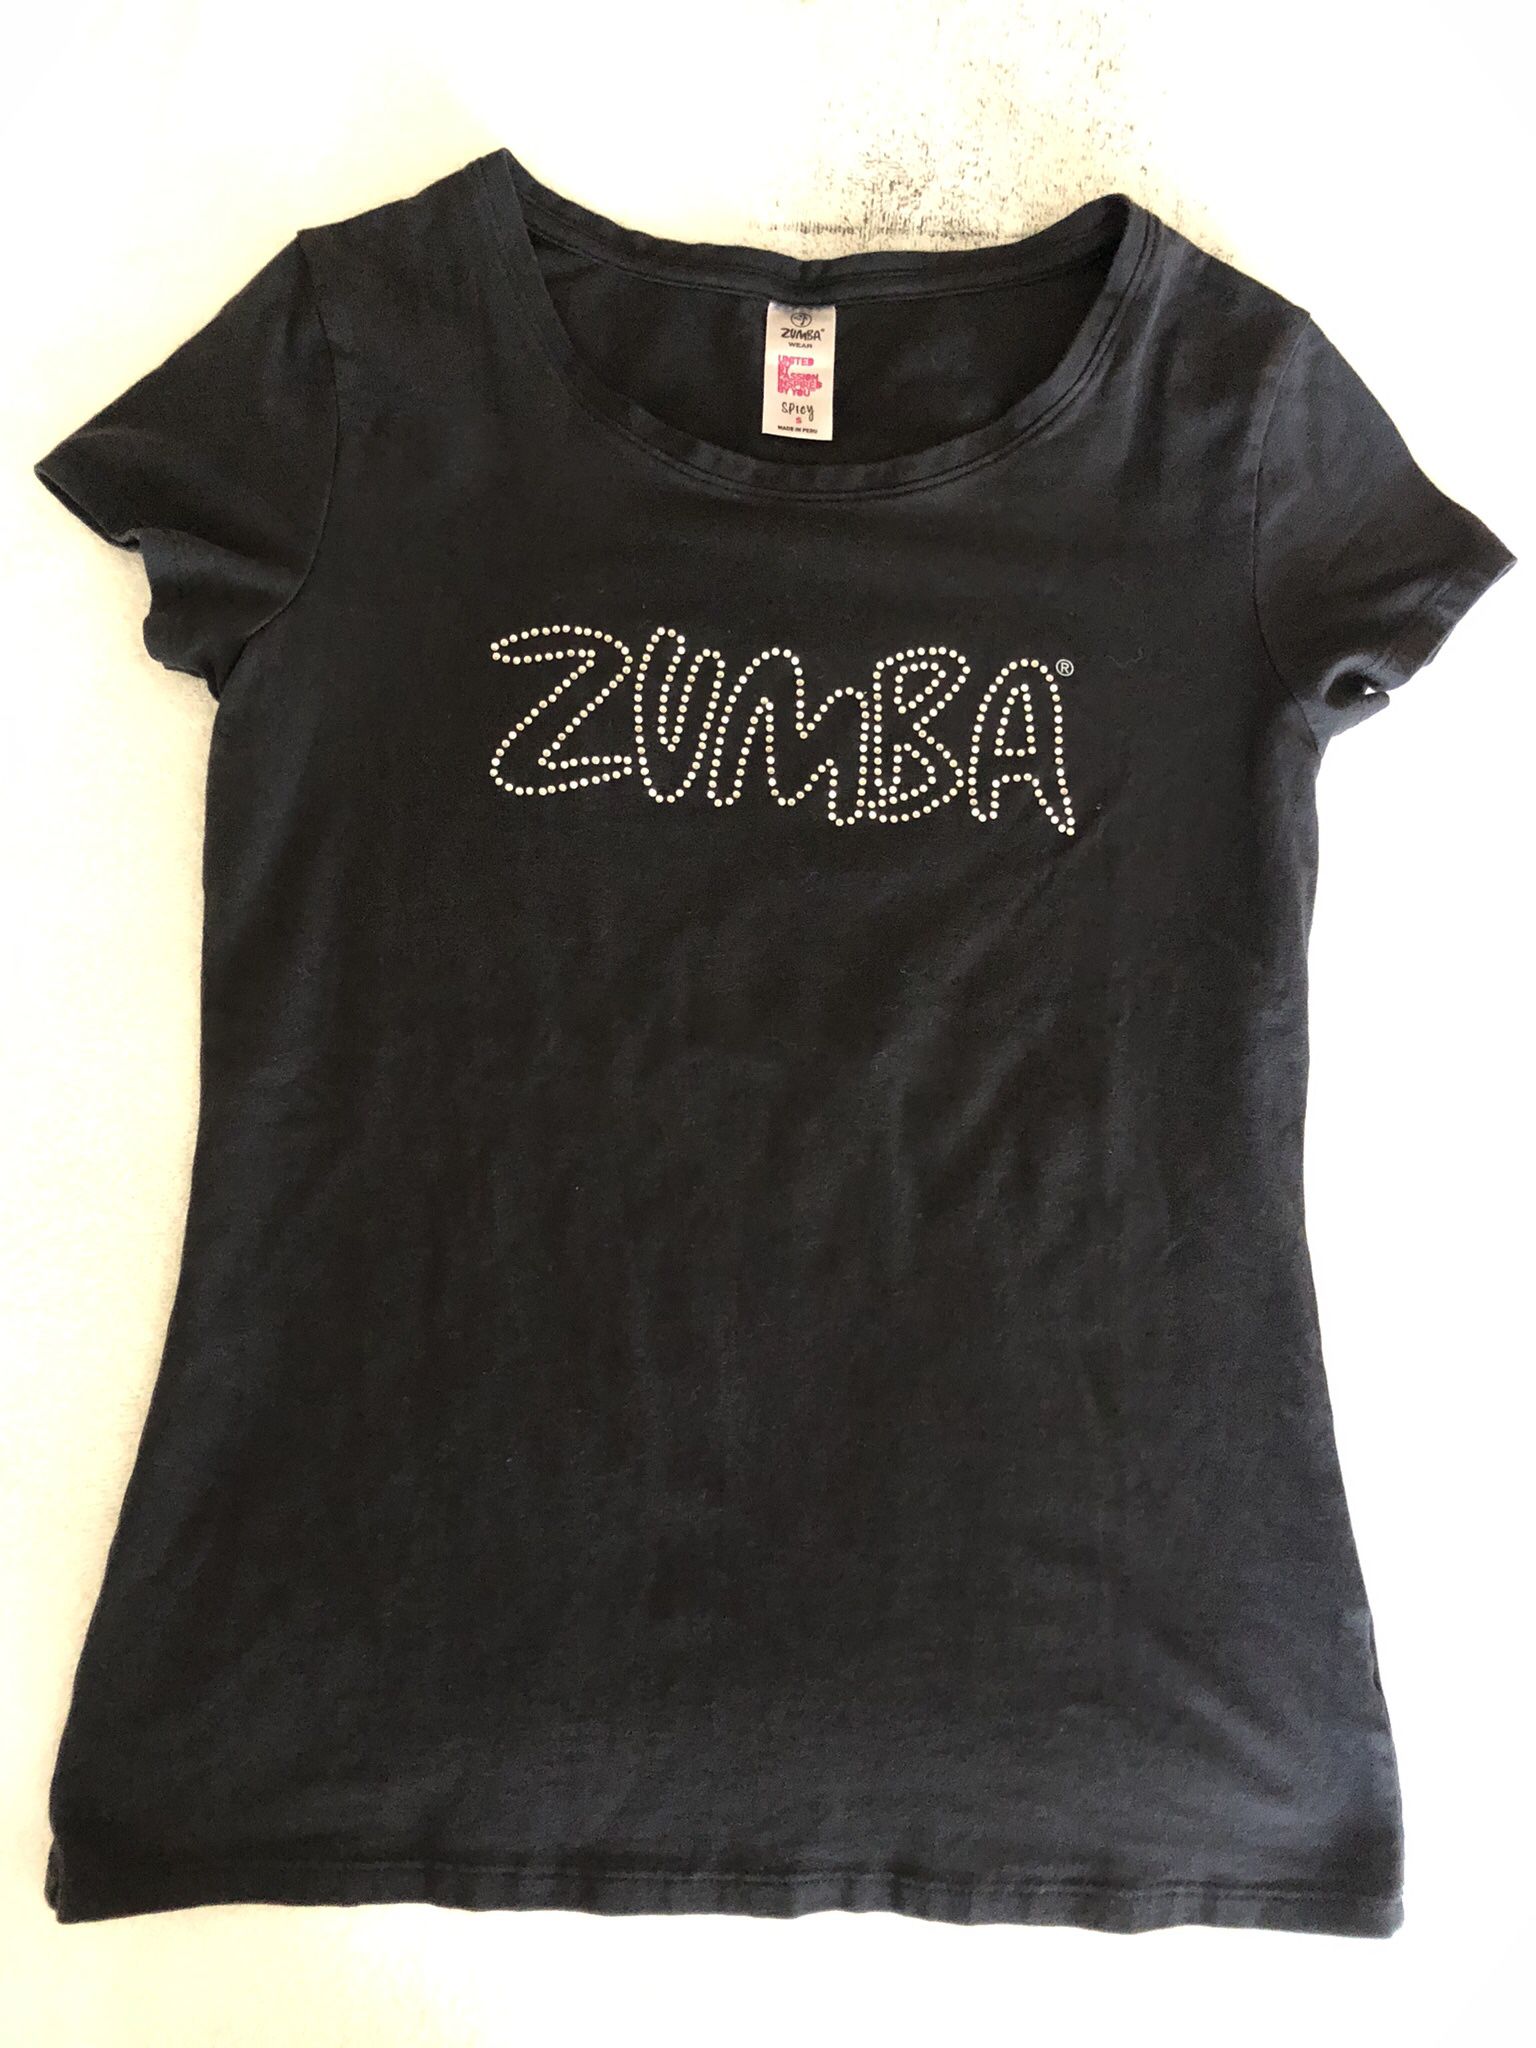 Two Zumba shirts 